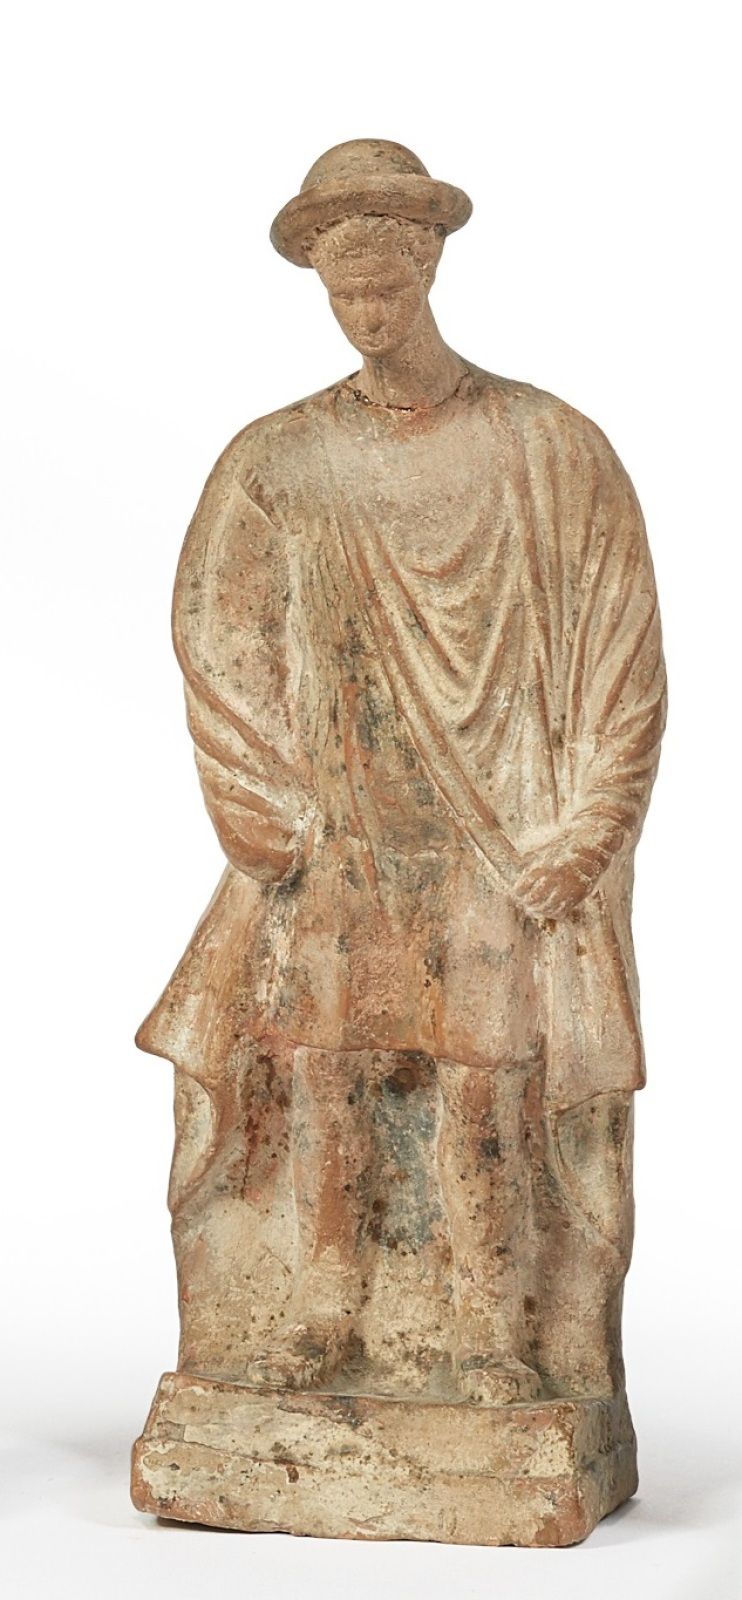 Null 代表一个穿着短外衣和斗篷的站立男人的塑像

他戴着一个望远镜

赭色赤土

希腊，公元前4世纪

(头颅重新接上。)

高度23.5厘米





专&hellip;